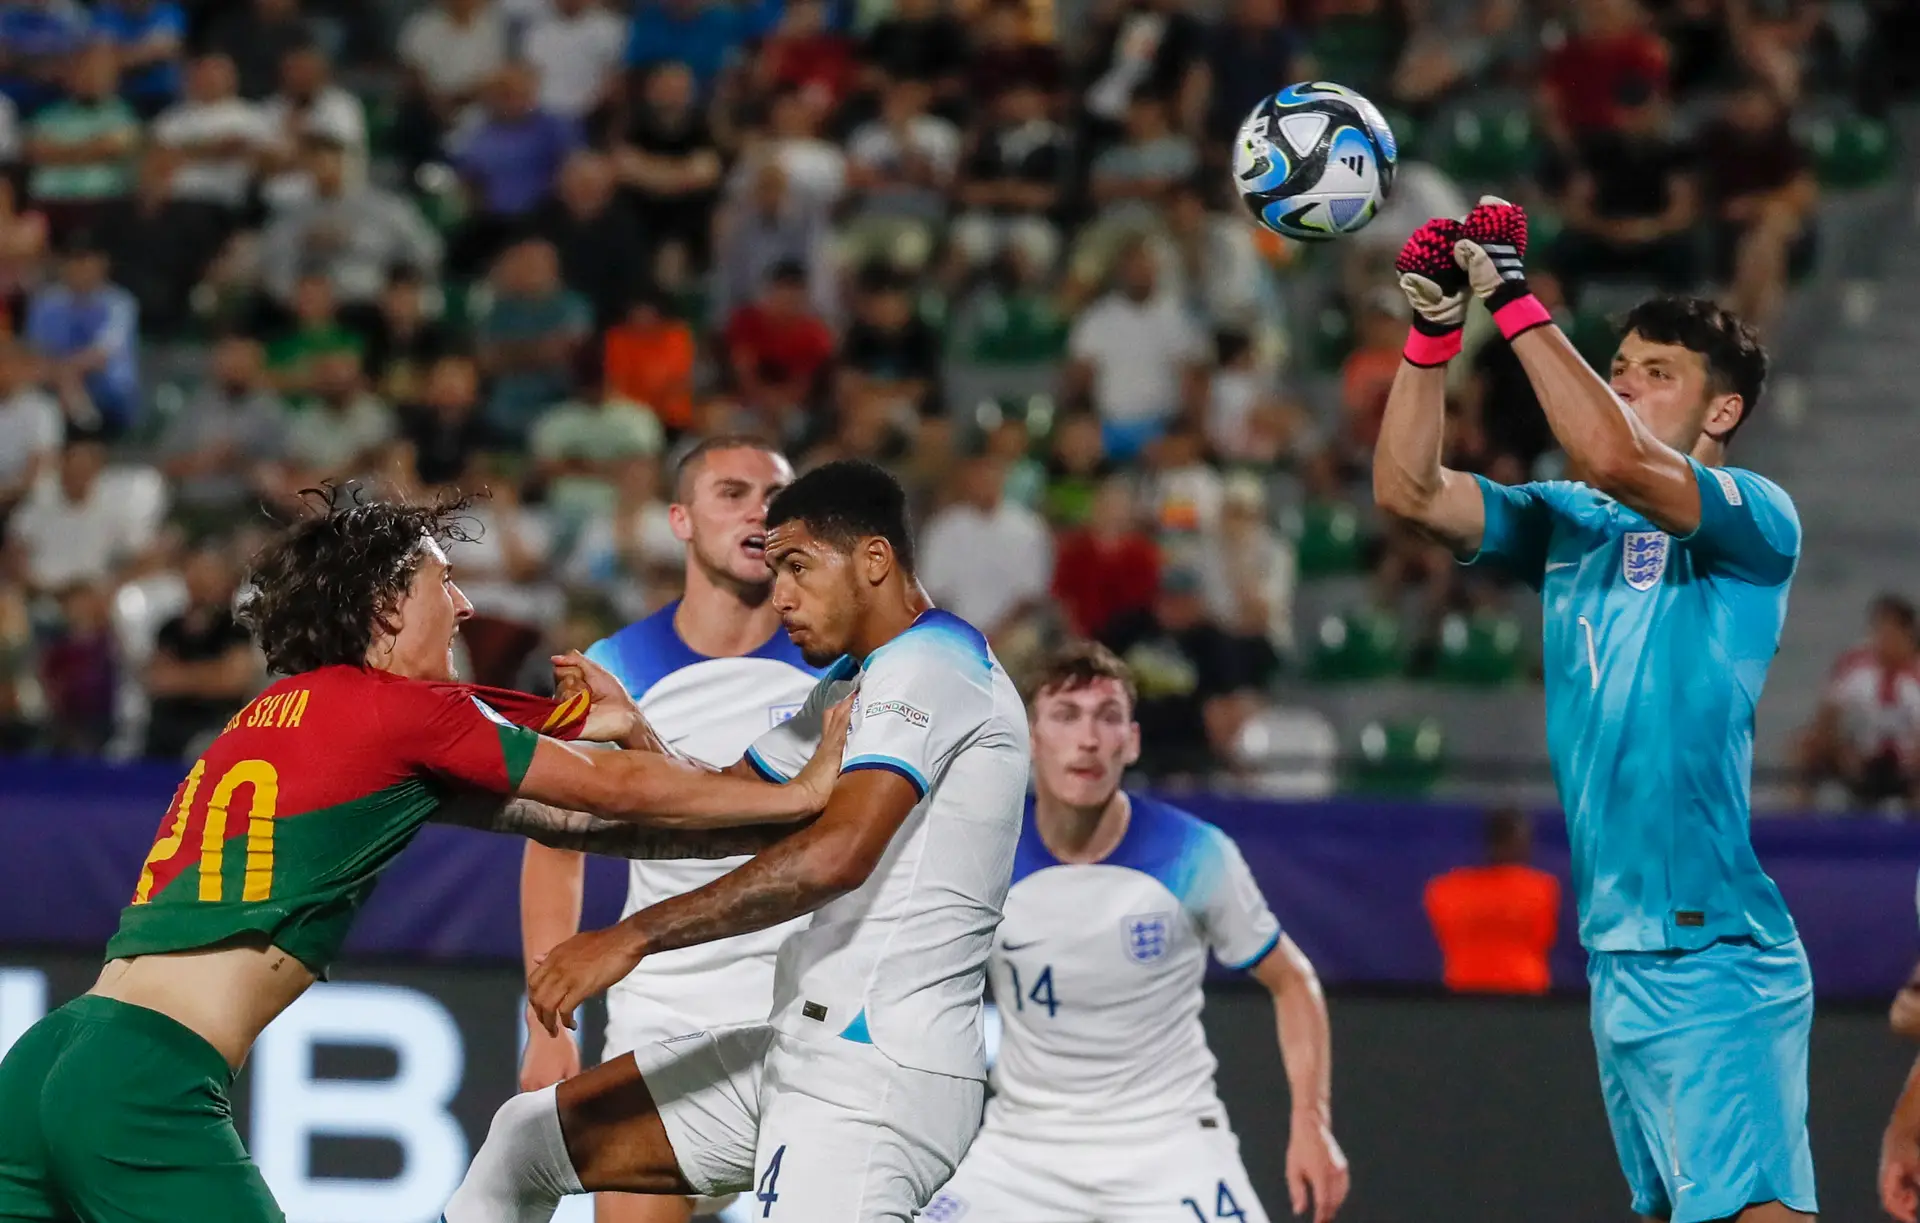 Portugal foi eliminado pela Inglaterra do Europeu de Sub-21 e